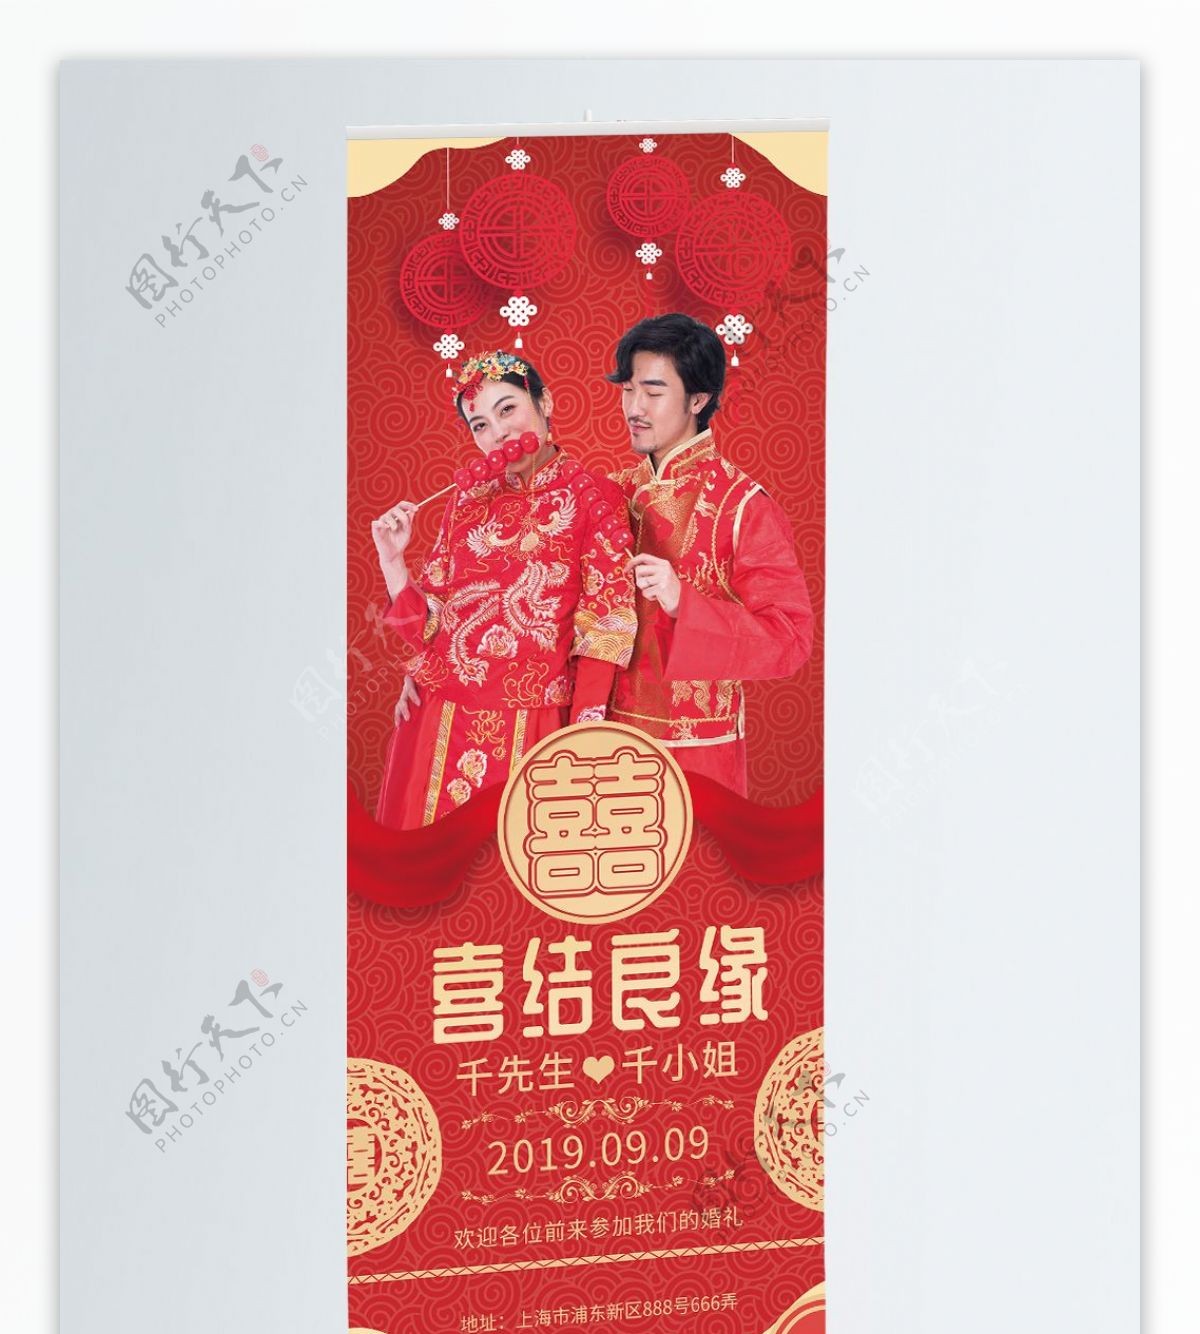 红色中国风婚礼宣传展板